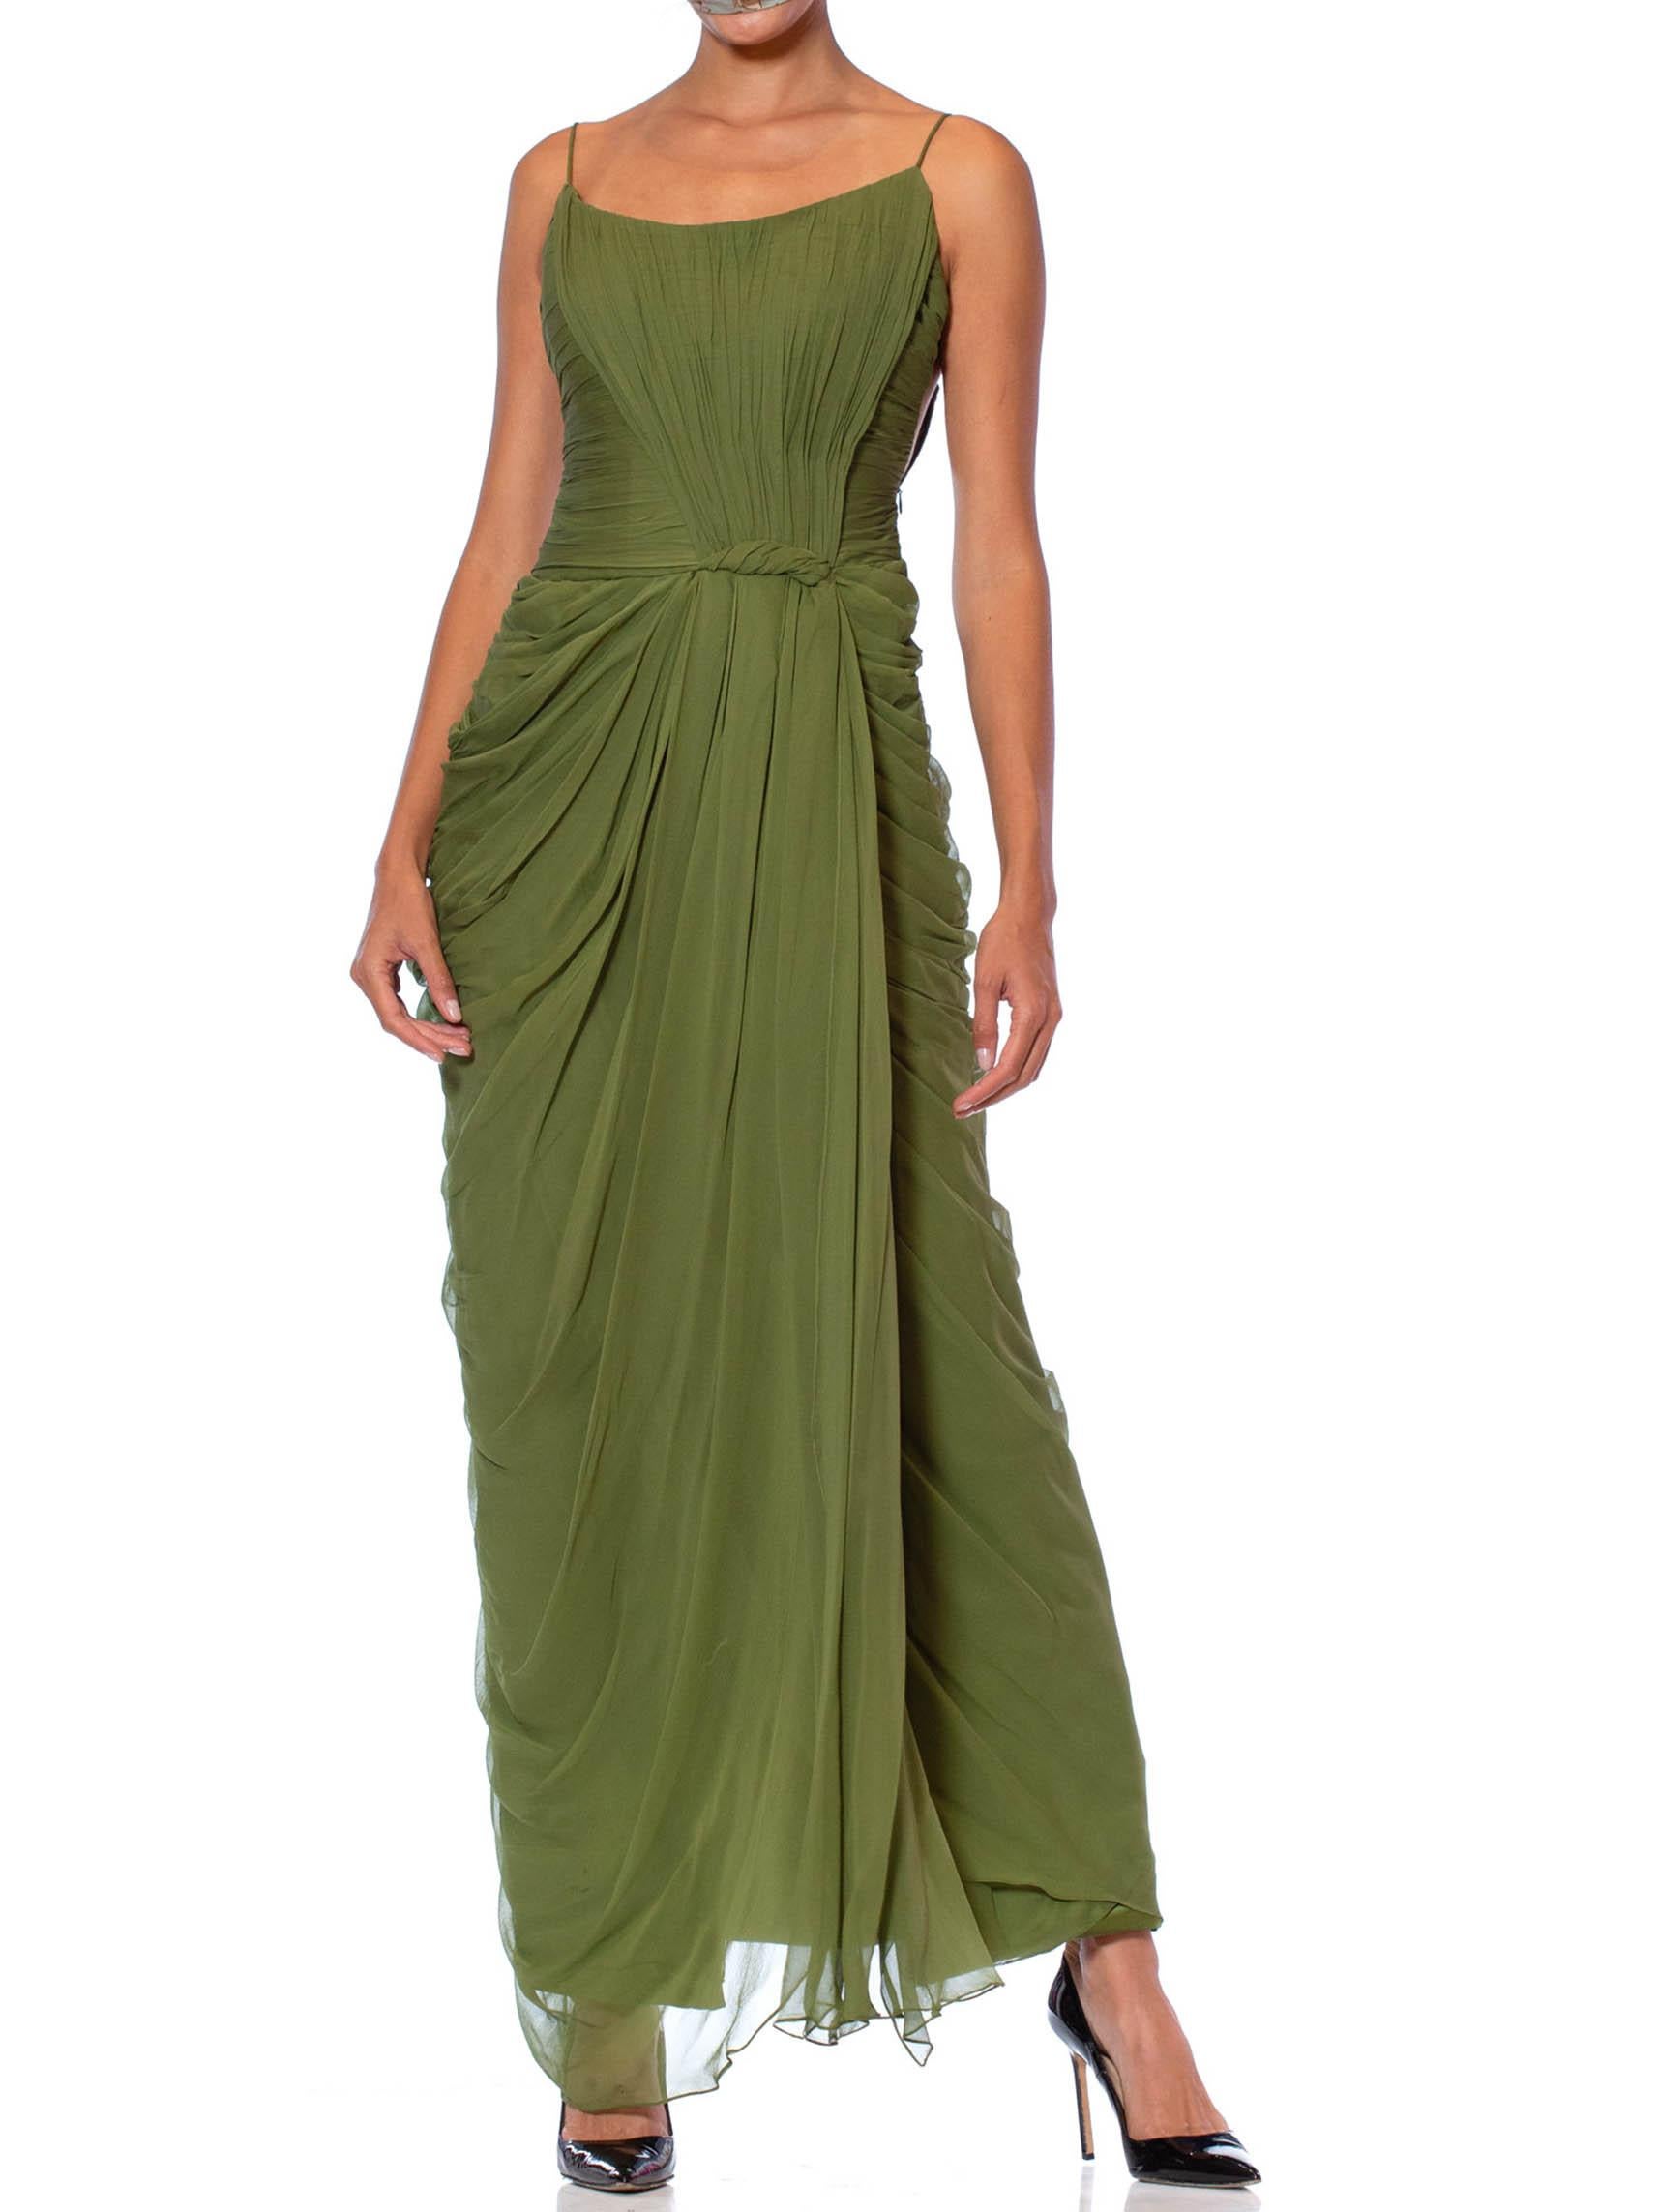 olive green formal dress